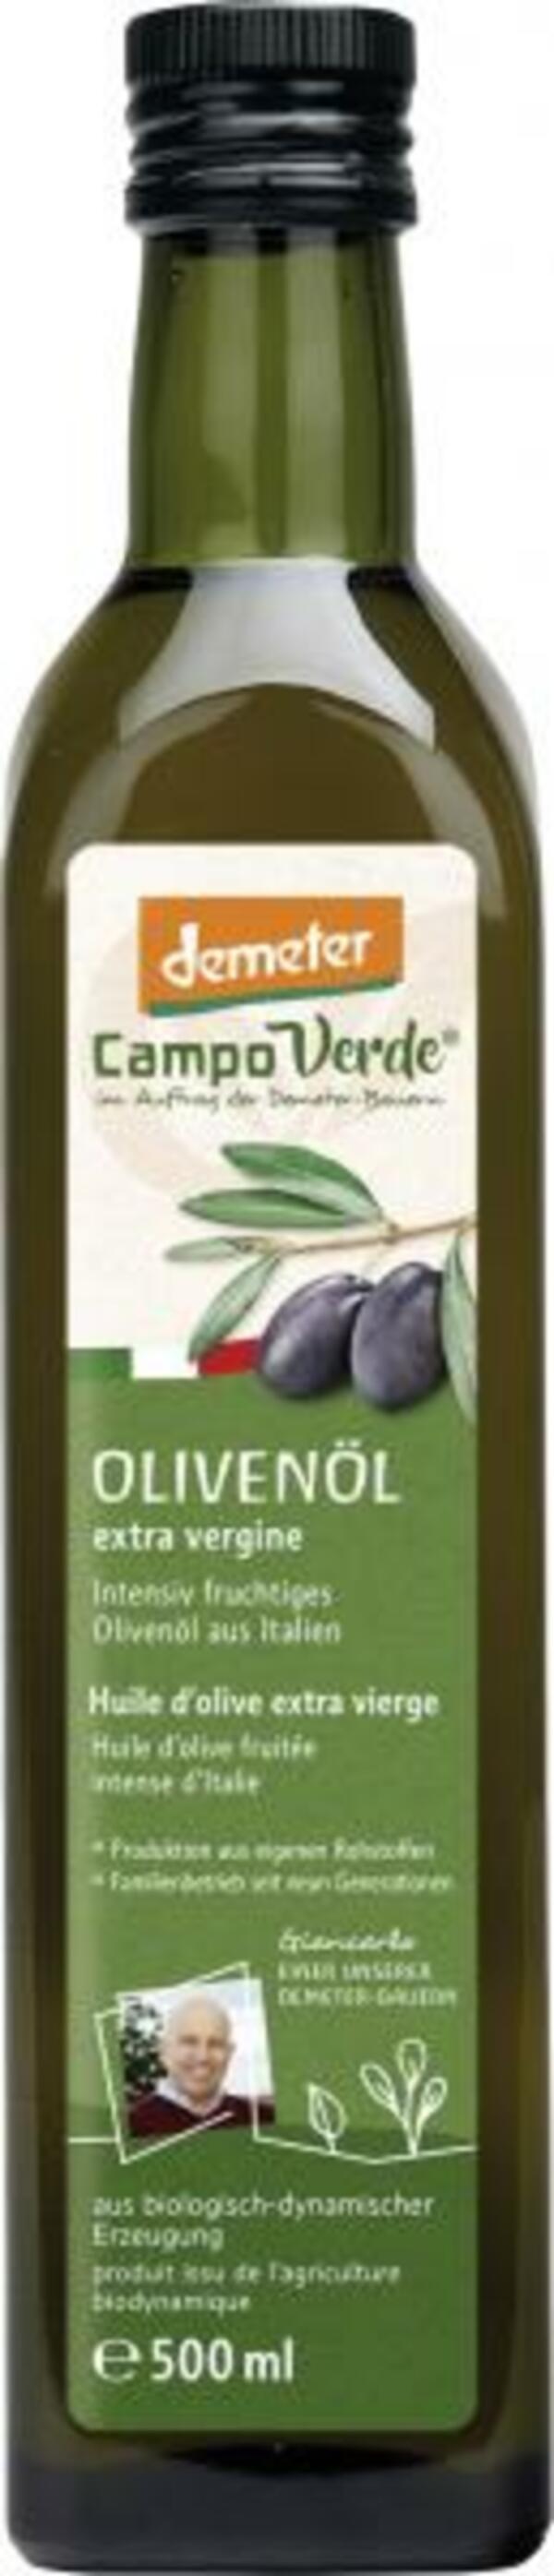 Bild 1 von Campo Verde Demeter Olivenöl extra vergine